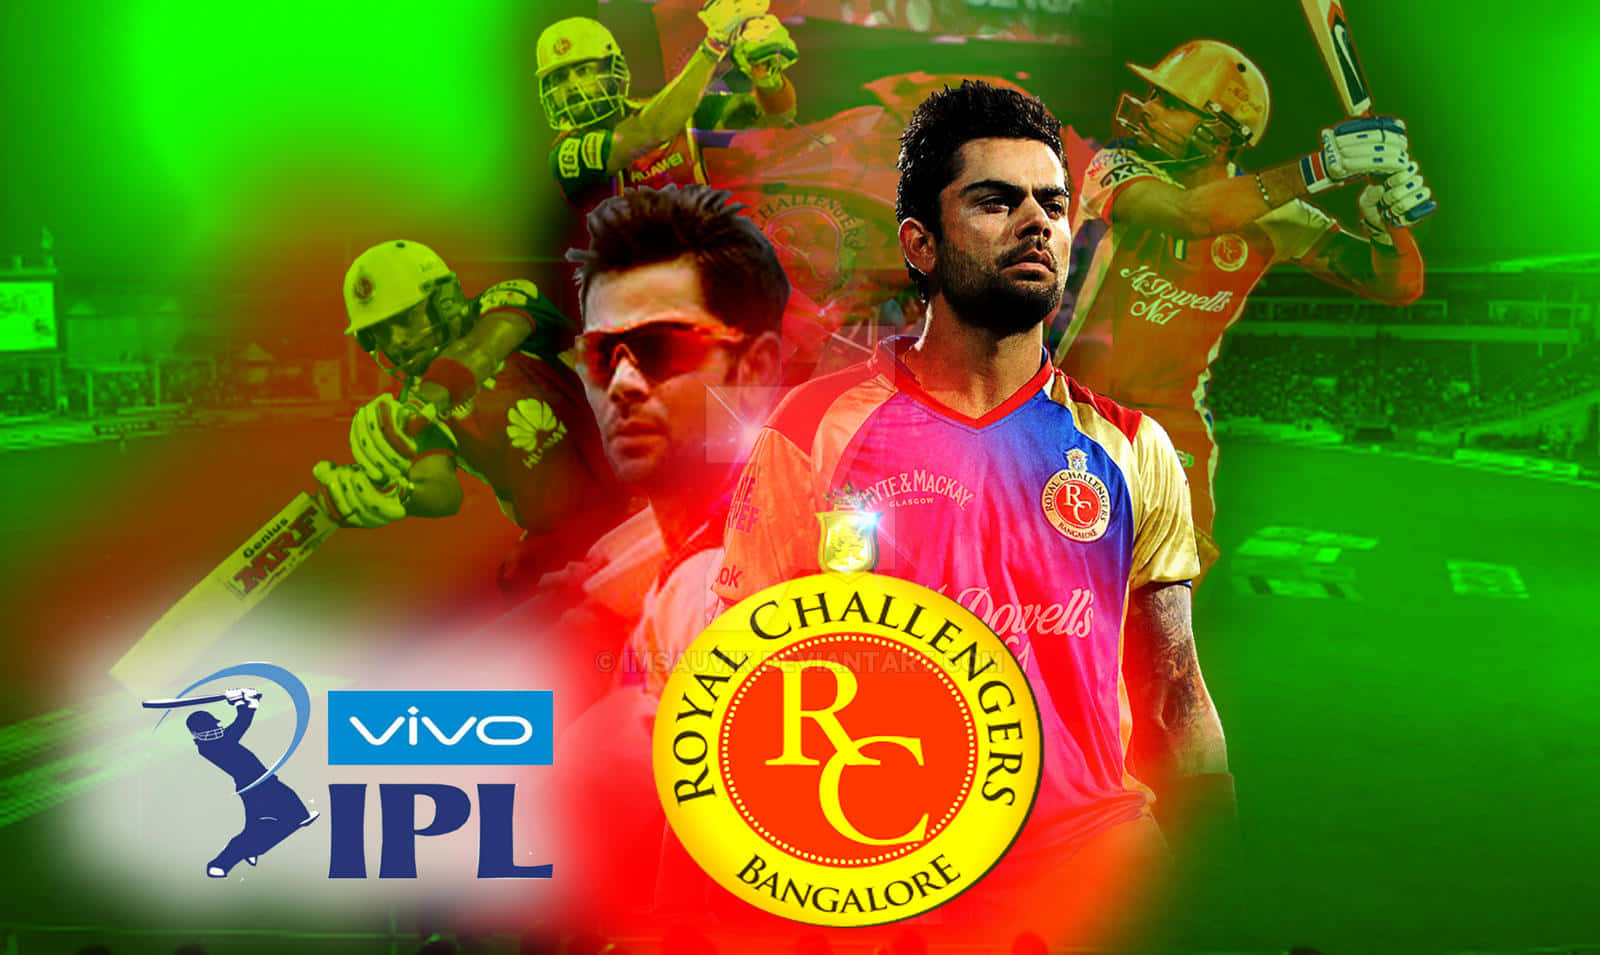 ¡apoyaa Los Royal Challengers Bangalore!